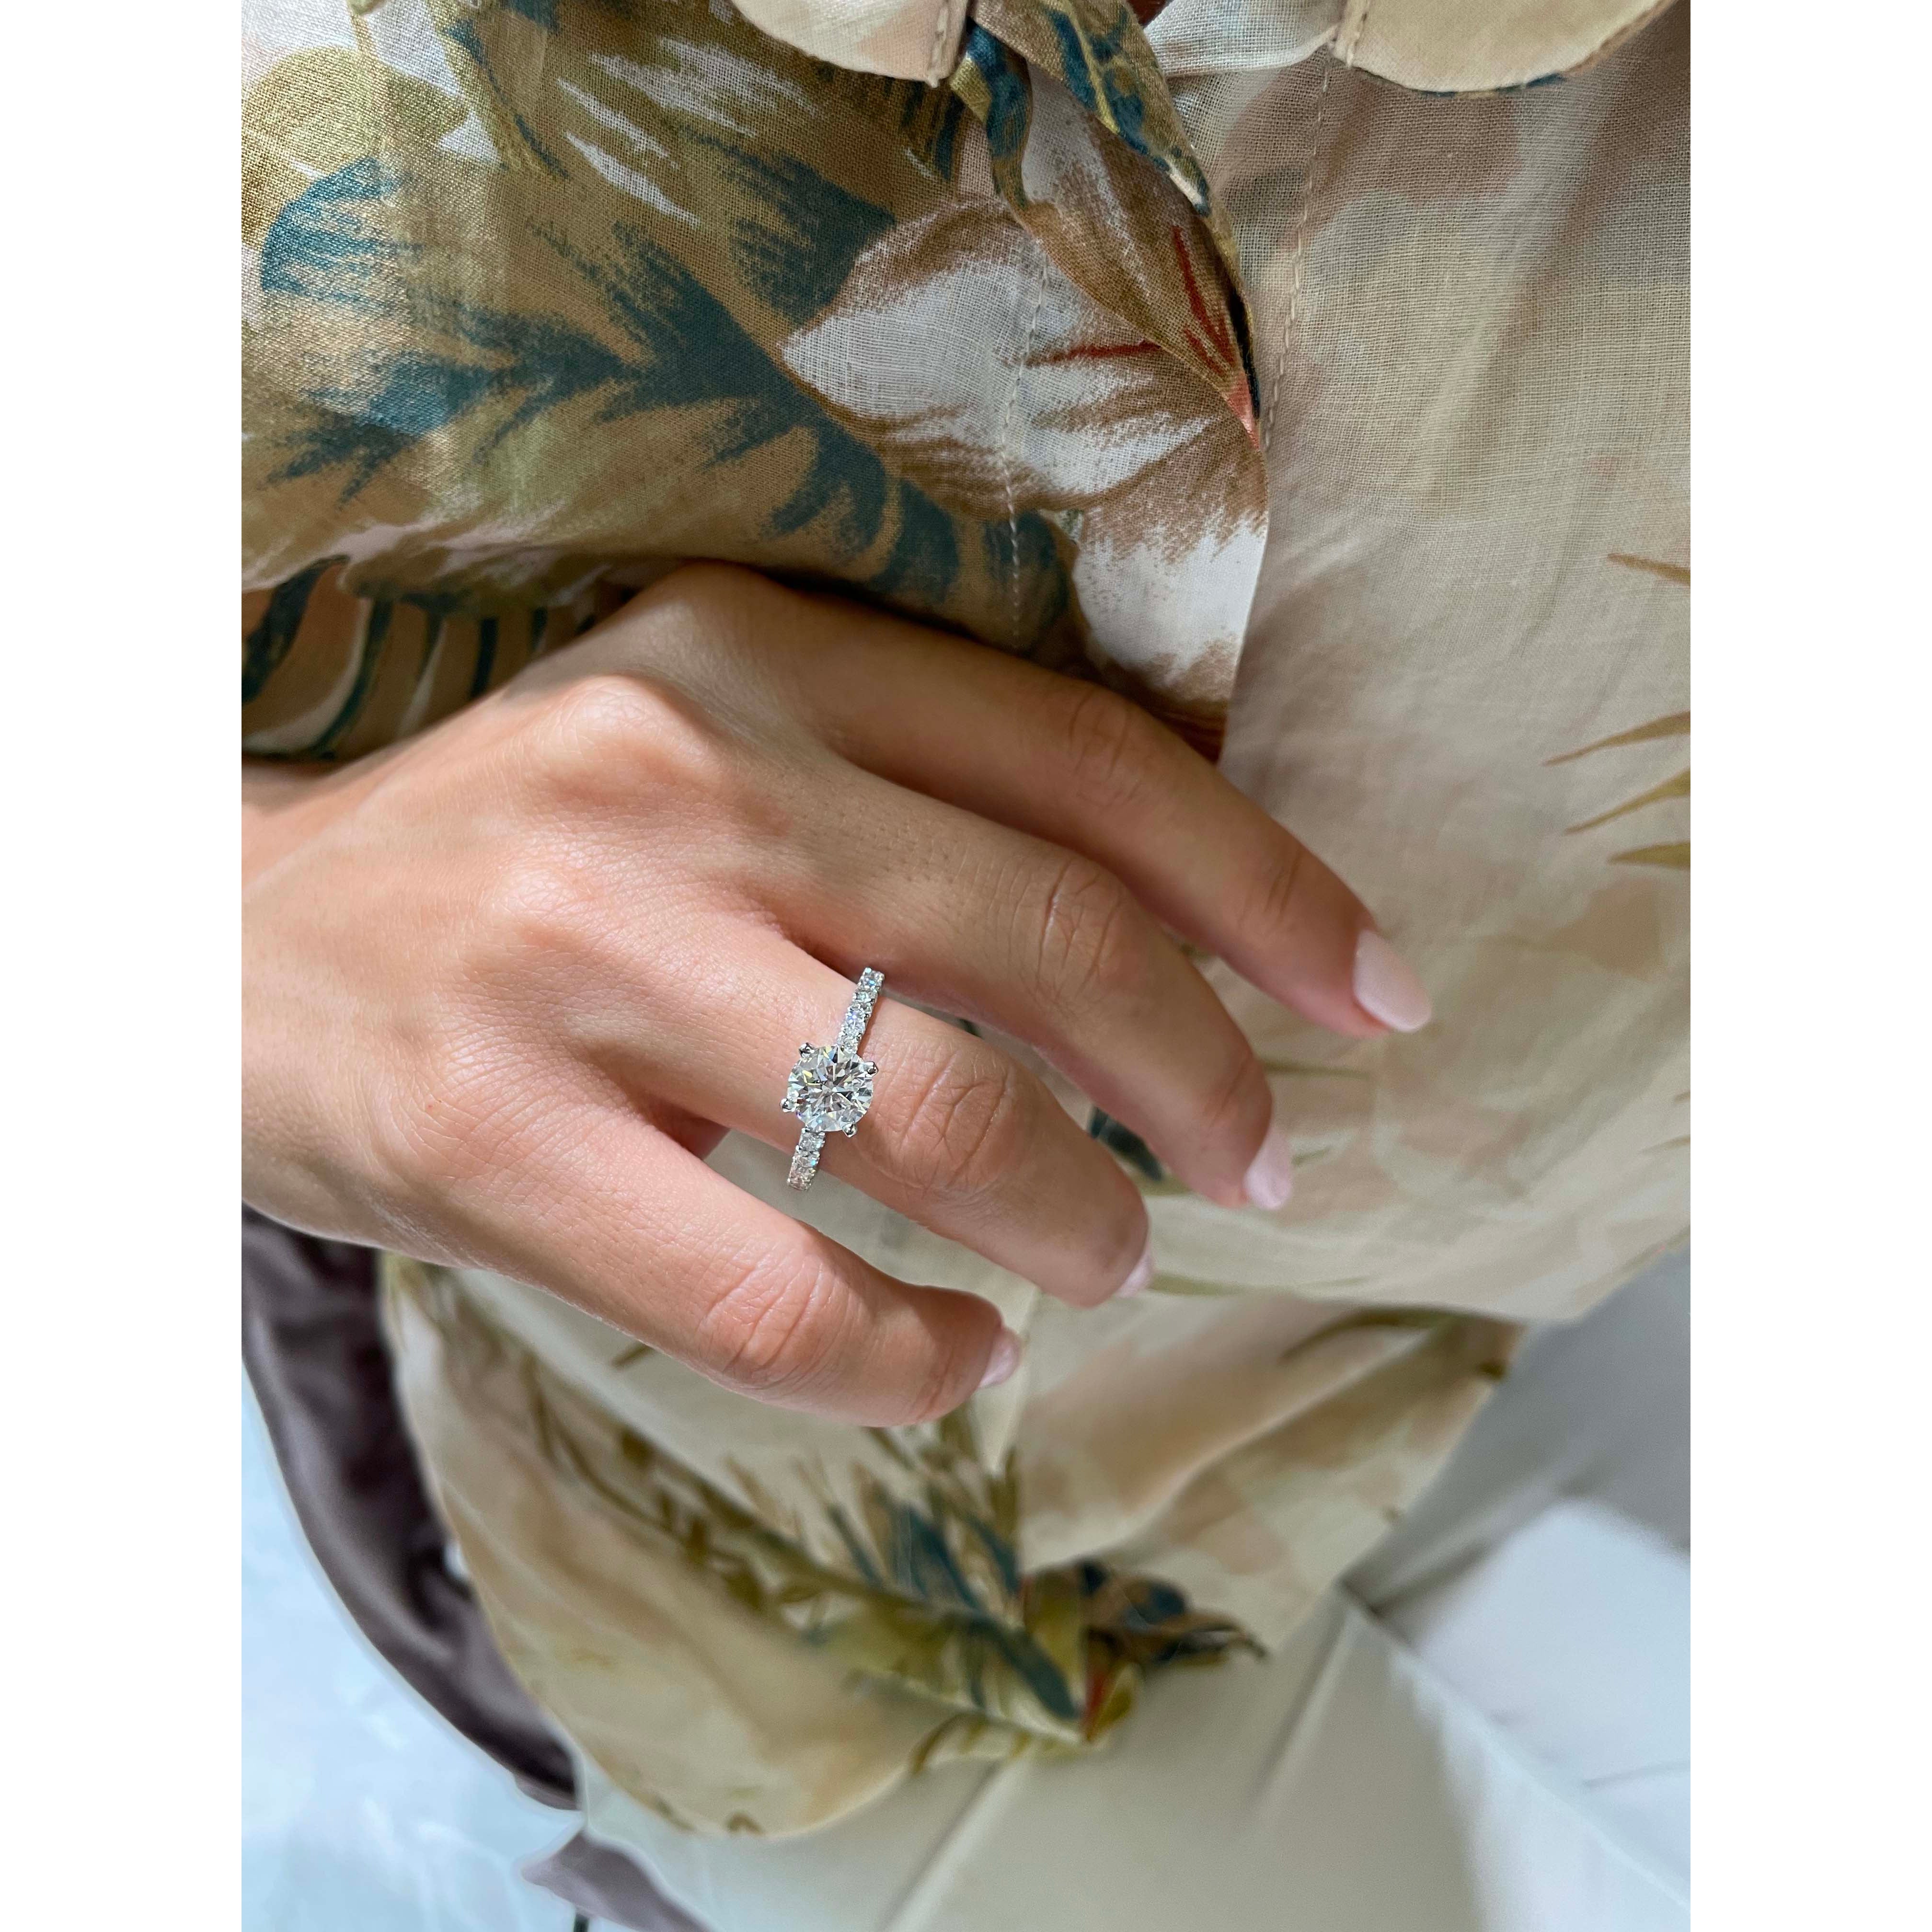 Alison Diamond Engagement Ring   (2 Carat) -Platinum